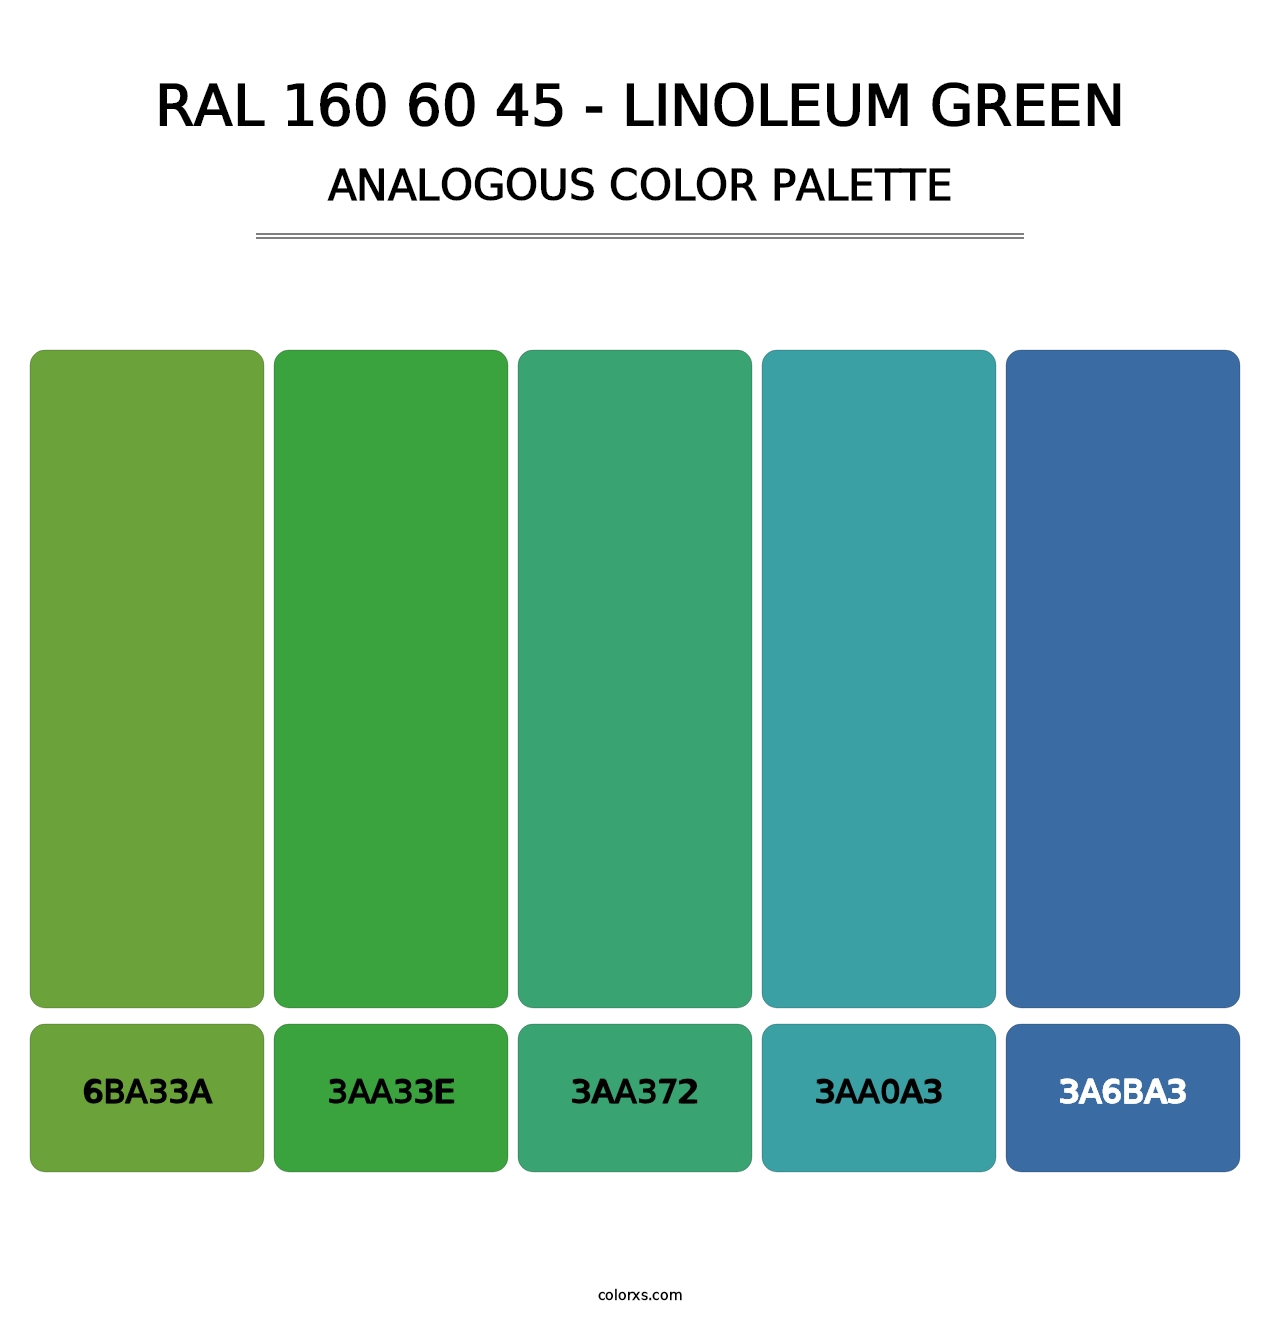 RAL 160 60 45 - Linoleum Green - Analogous Color Palette